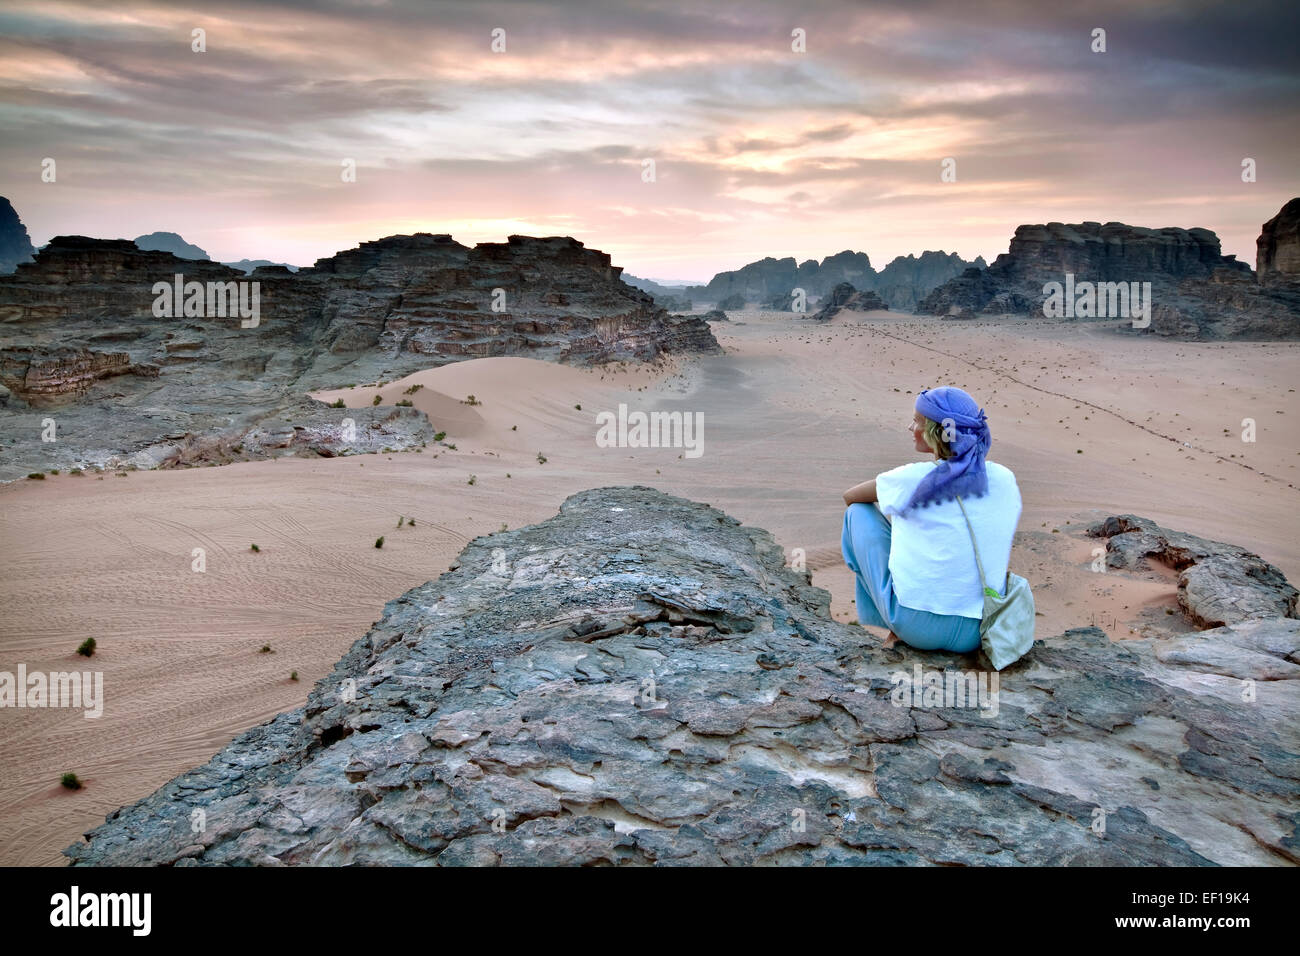 Girl overlooking Wadi Rum in Jordan Stock Photo